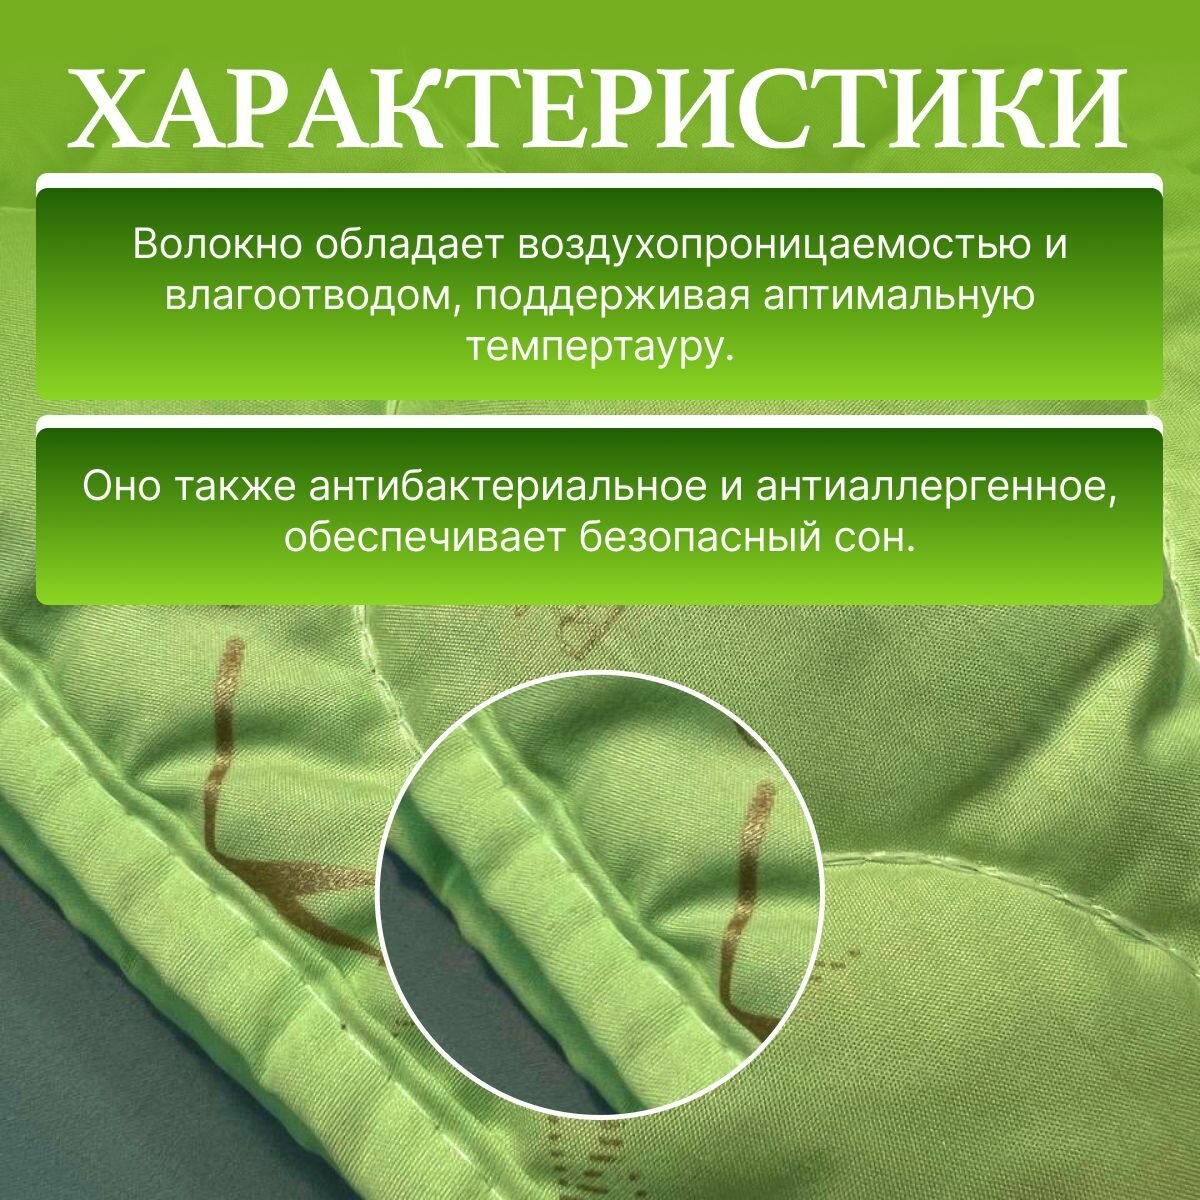 Гипоаллергенное 2 спальное одеяло ТИК всесезонное, с наполнителем из бамбука, стеганный чехол из хлопка, легкое, теплое, размер 175x210